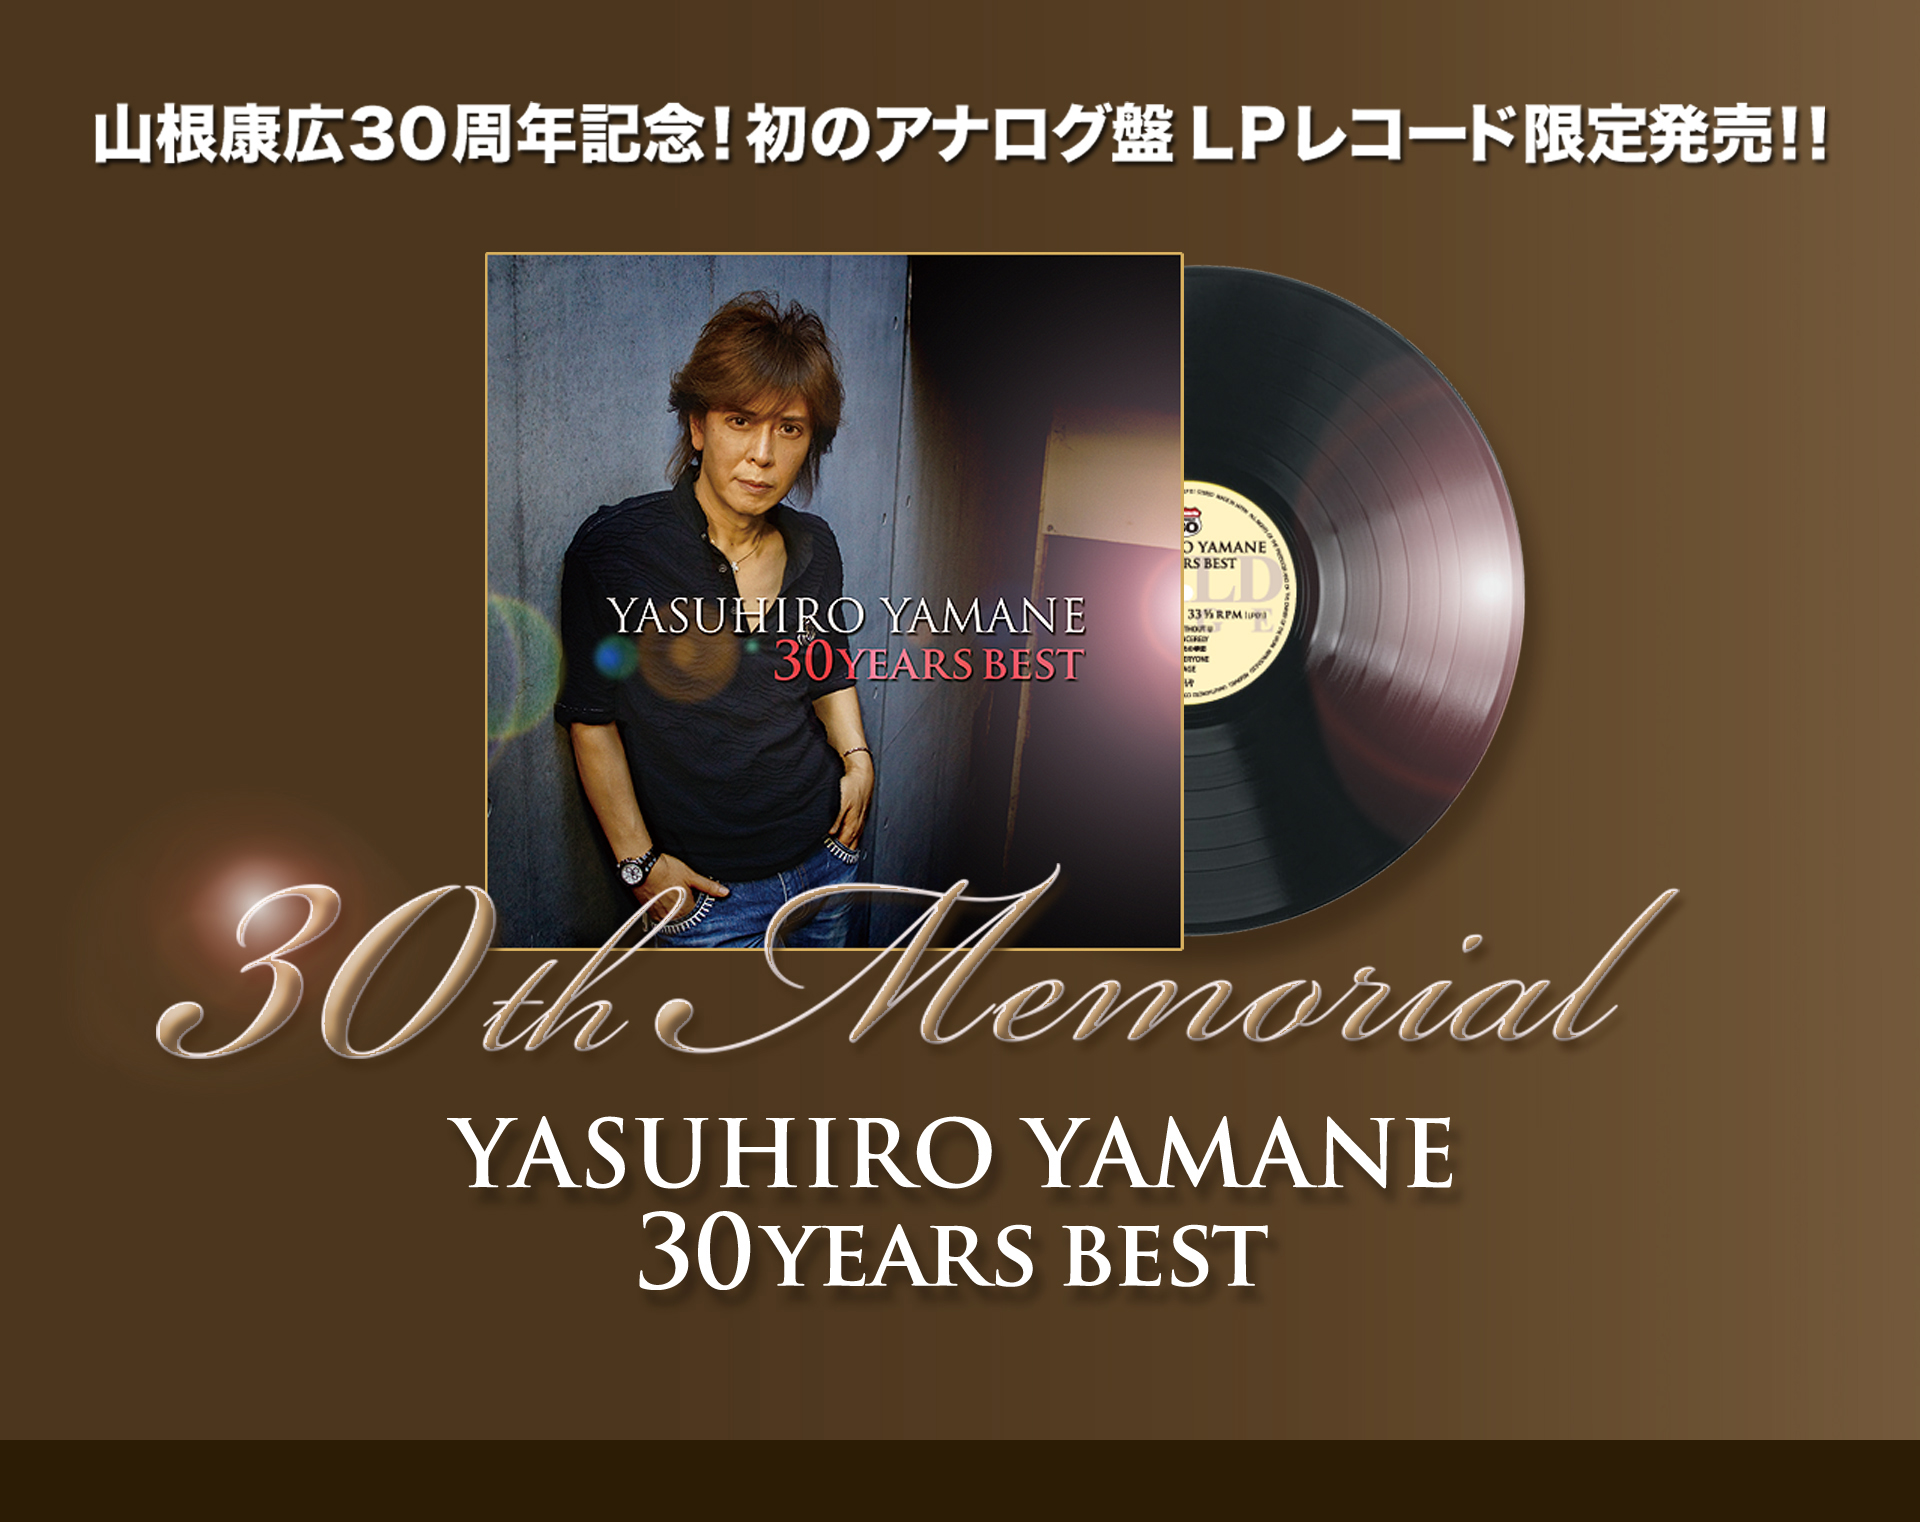 YASUHIRO YAMANE 30 YEARS BEST